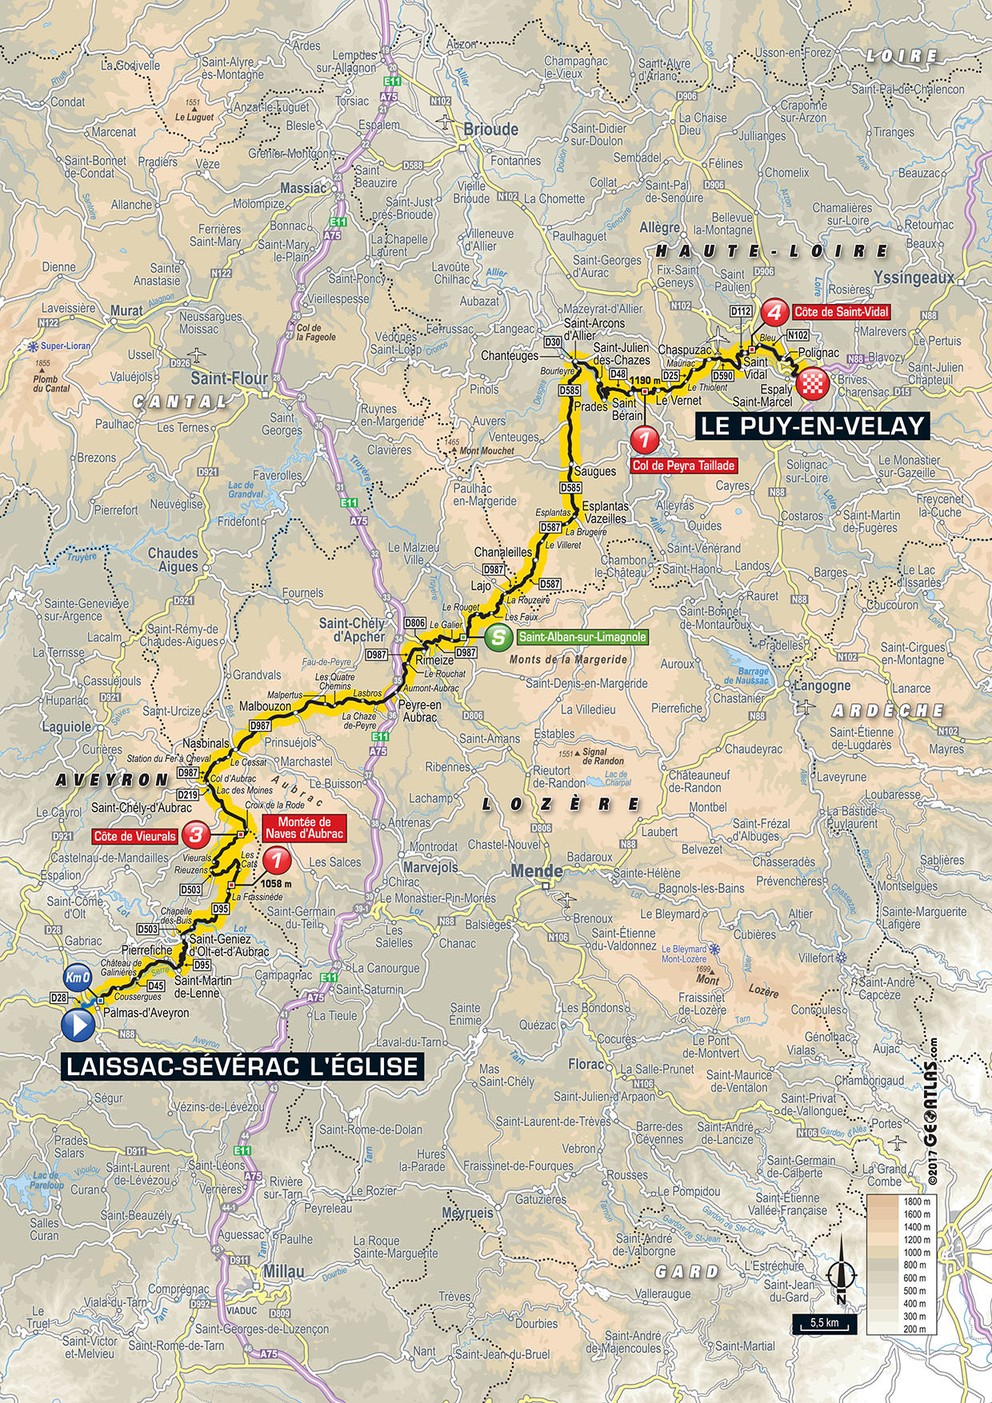 Mapa pätnástej etapy Tour de France 2017.